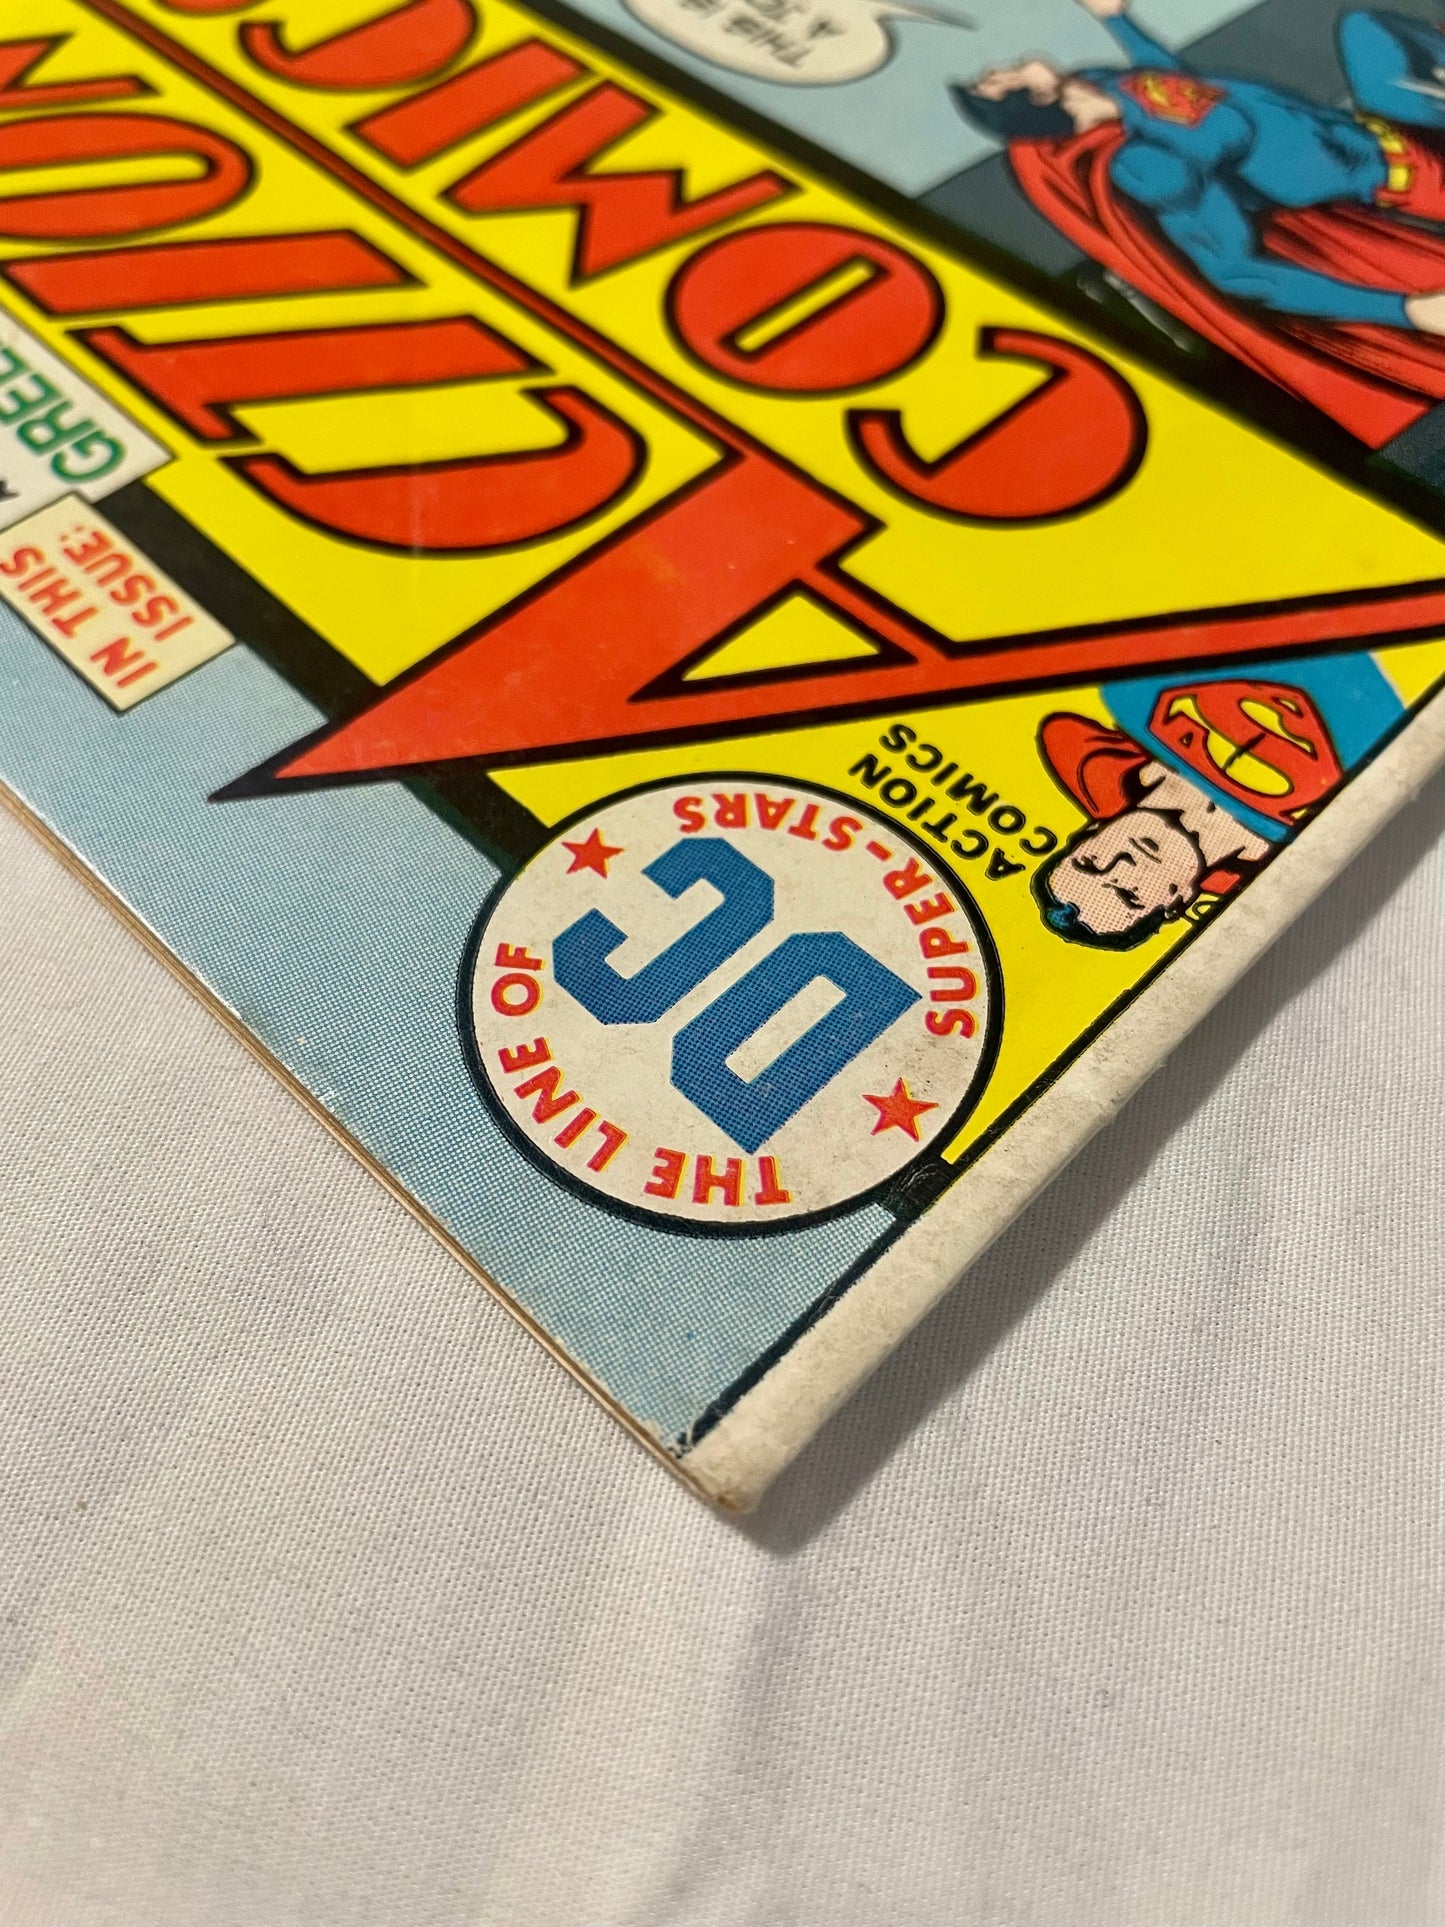 DC Comics Action Comics No. 436